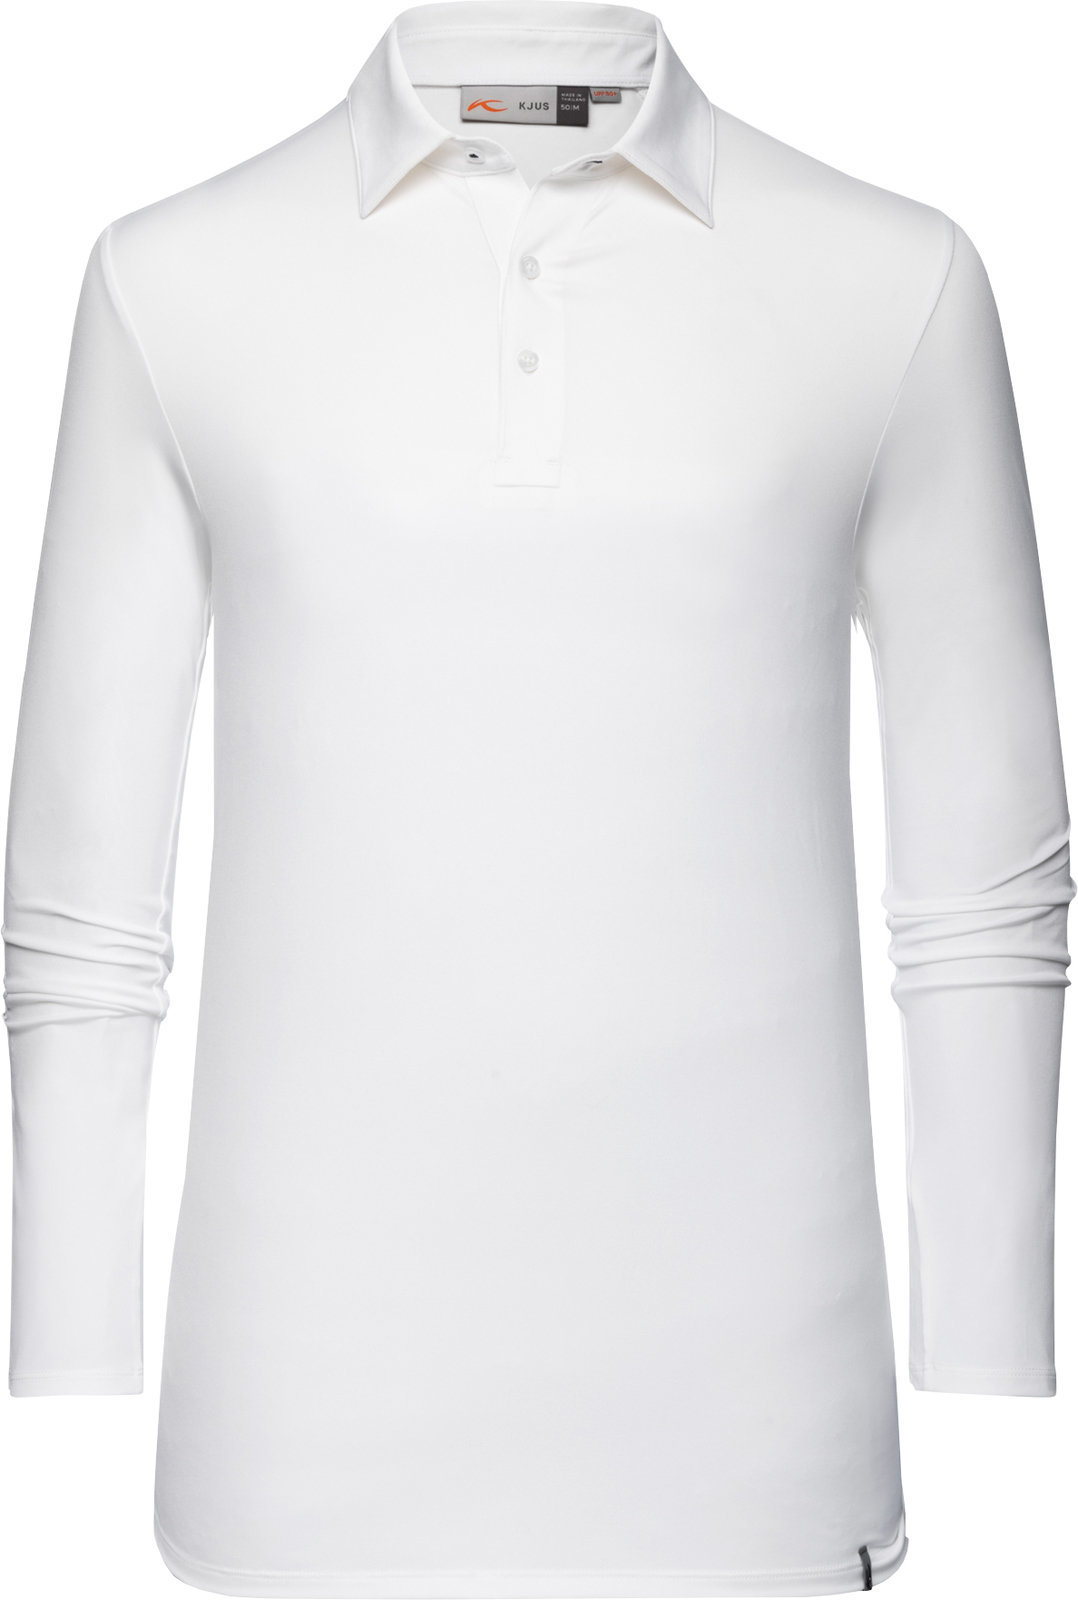 Camisa pólo Kjus Soren Solid Branco 52